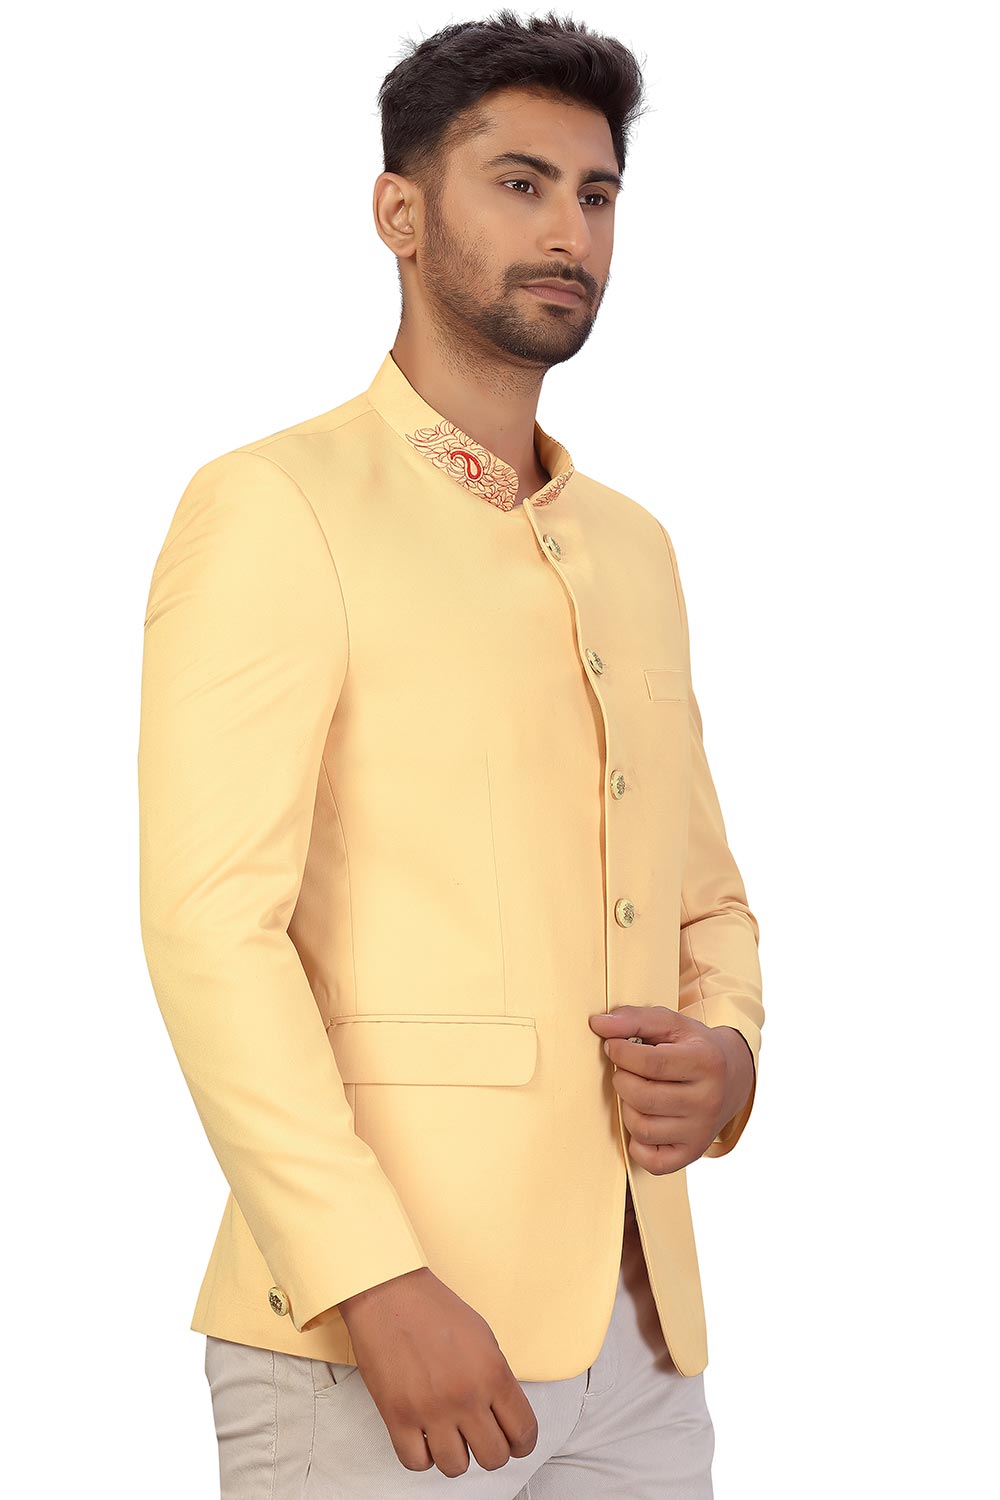 Buy Men's Suiting Fabric  Solid Jodhpuri in Cream  Online